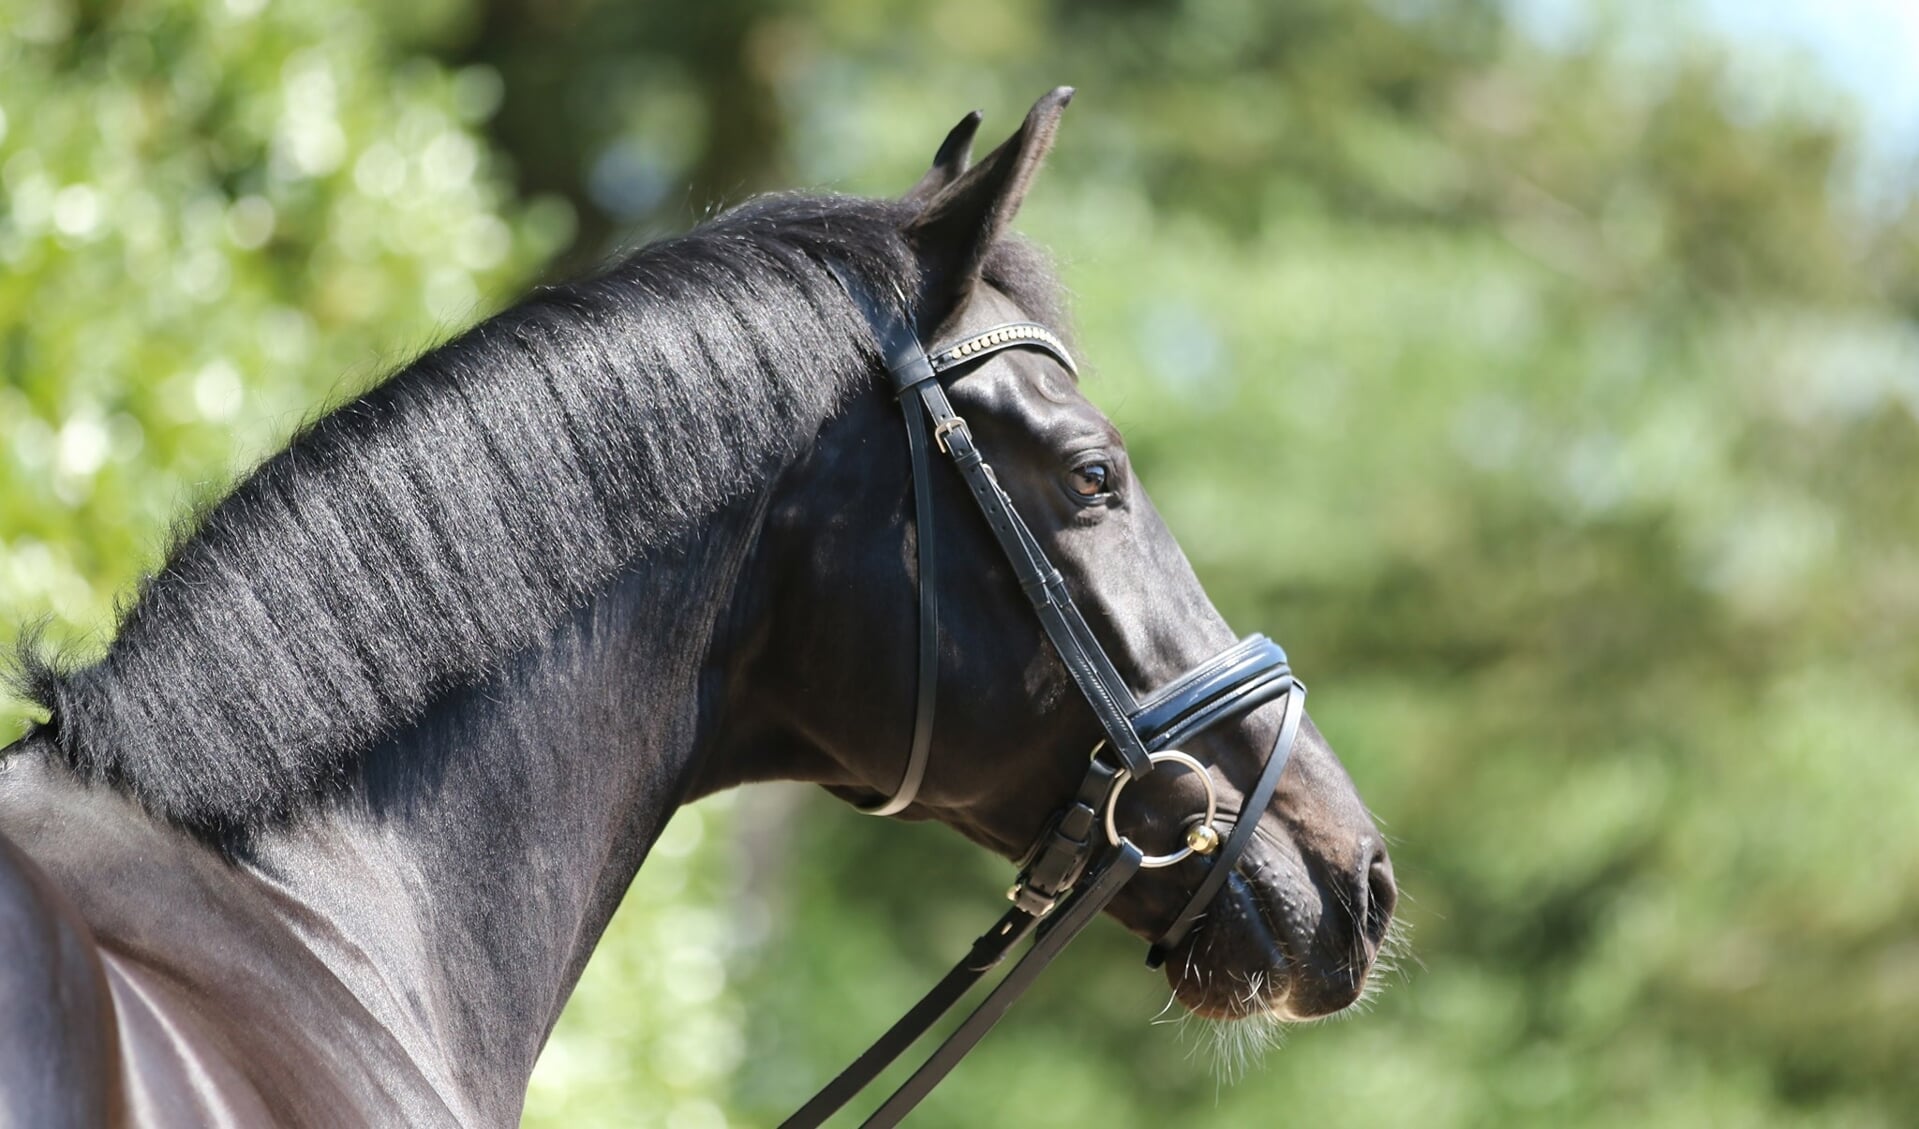 Ontoegankelijk Verdikken onderdelen Online je paard kopen of verkopen op Paarden-Veiling.nl | Het  onafhankelijke paarden(sport)medium